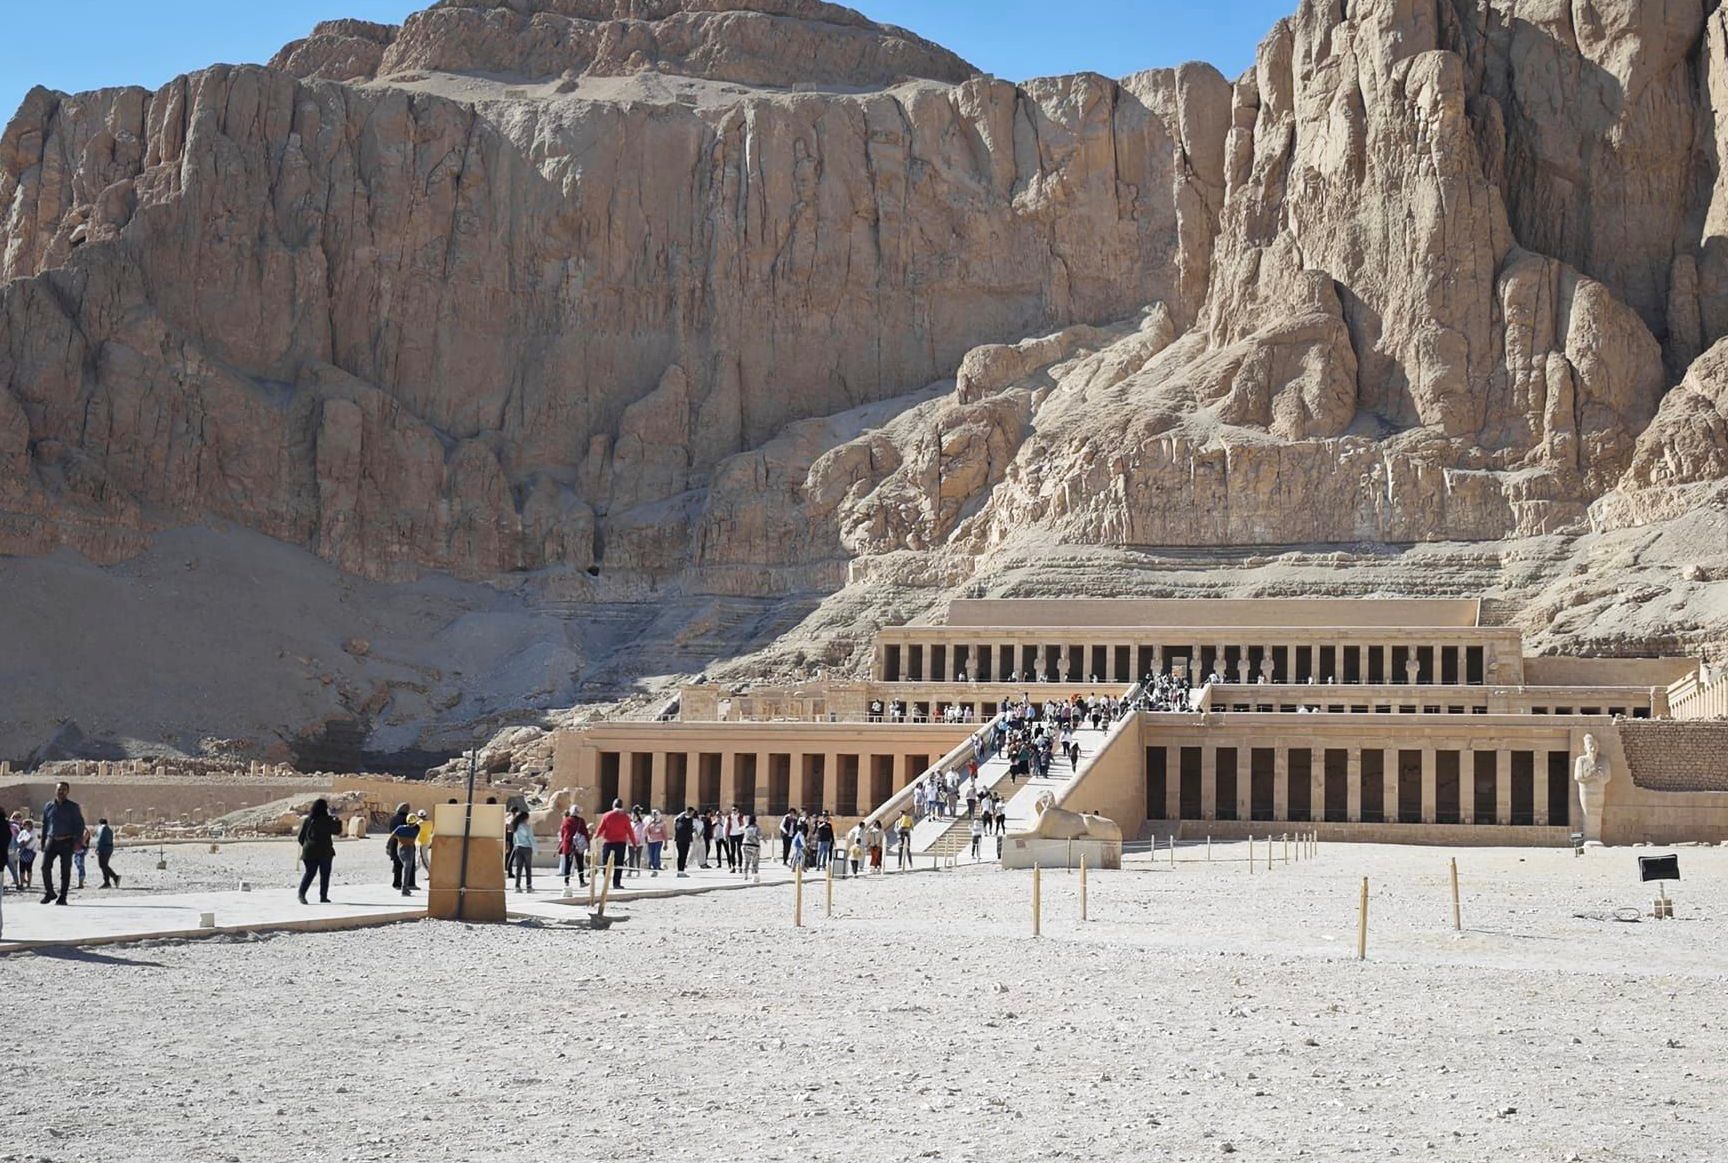 إقبال سياحى كبير من حول العالم للإستمتاع بمعبد الملك حتشبسوت